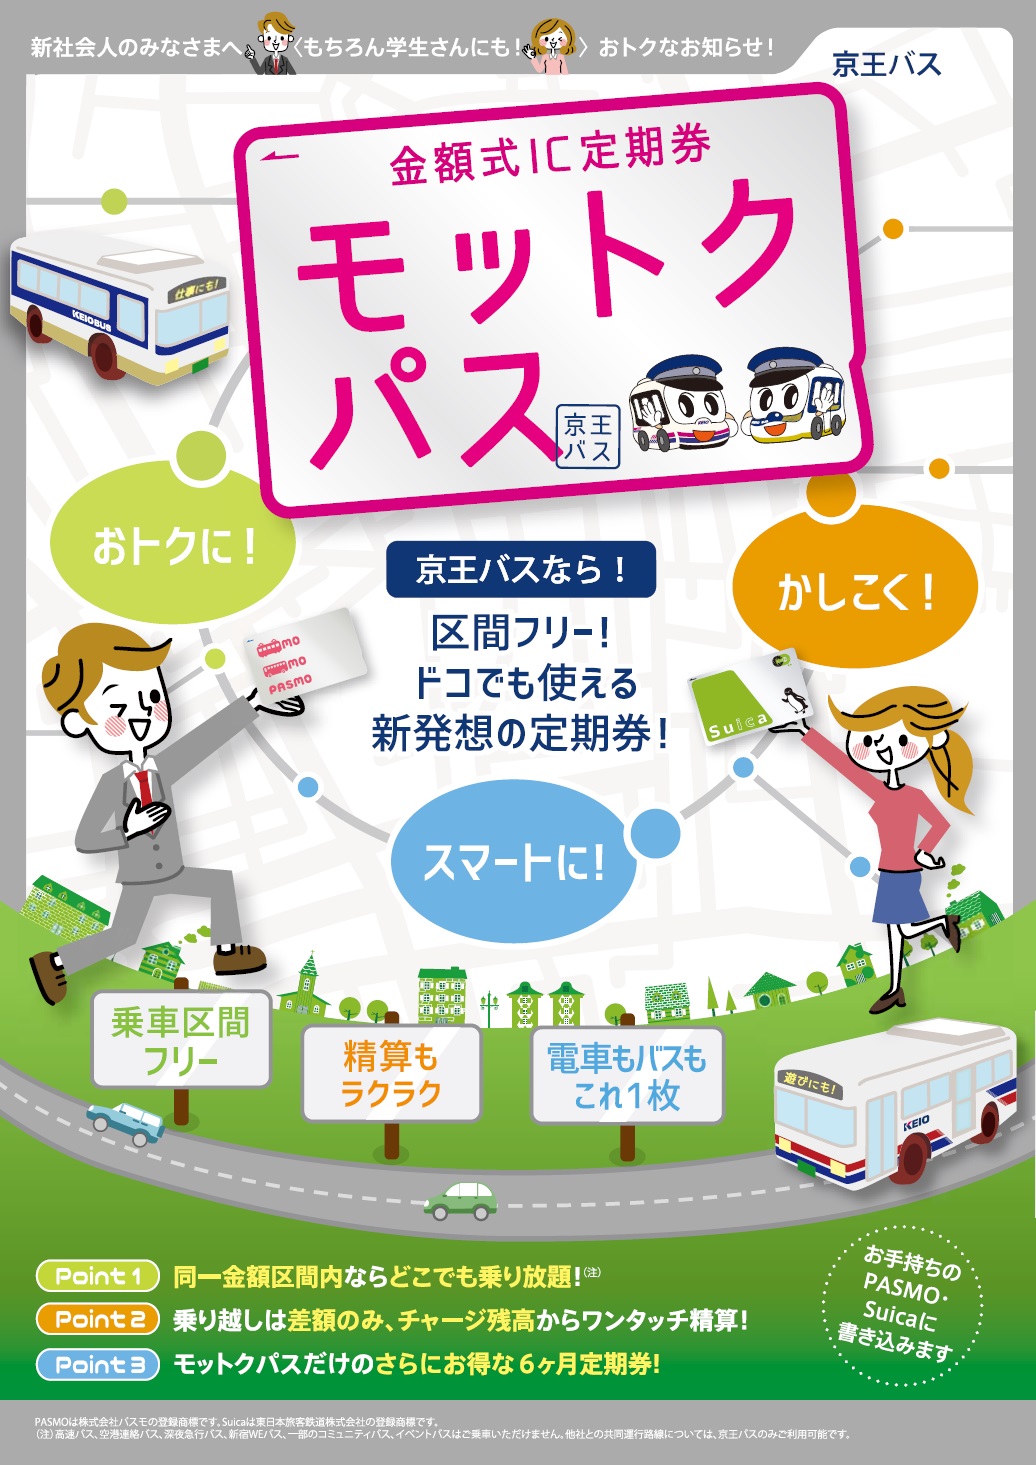 京王バスの金額式ｉｃ定期券 モットクパス を駅の自動券売機で発売します 京王電鉄株式会社のプレスリリース